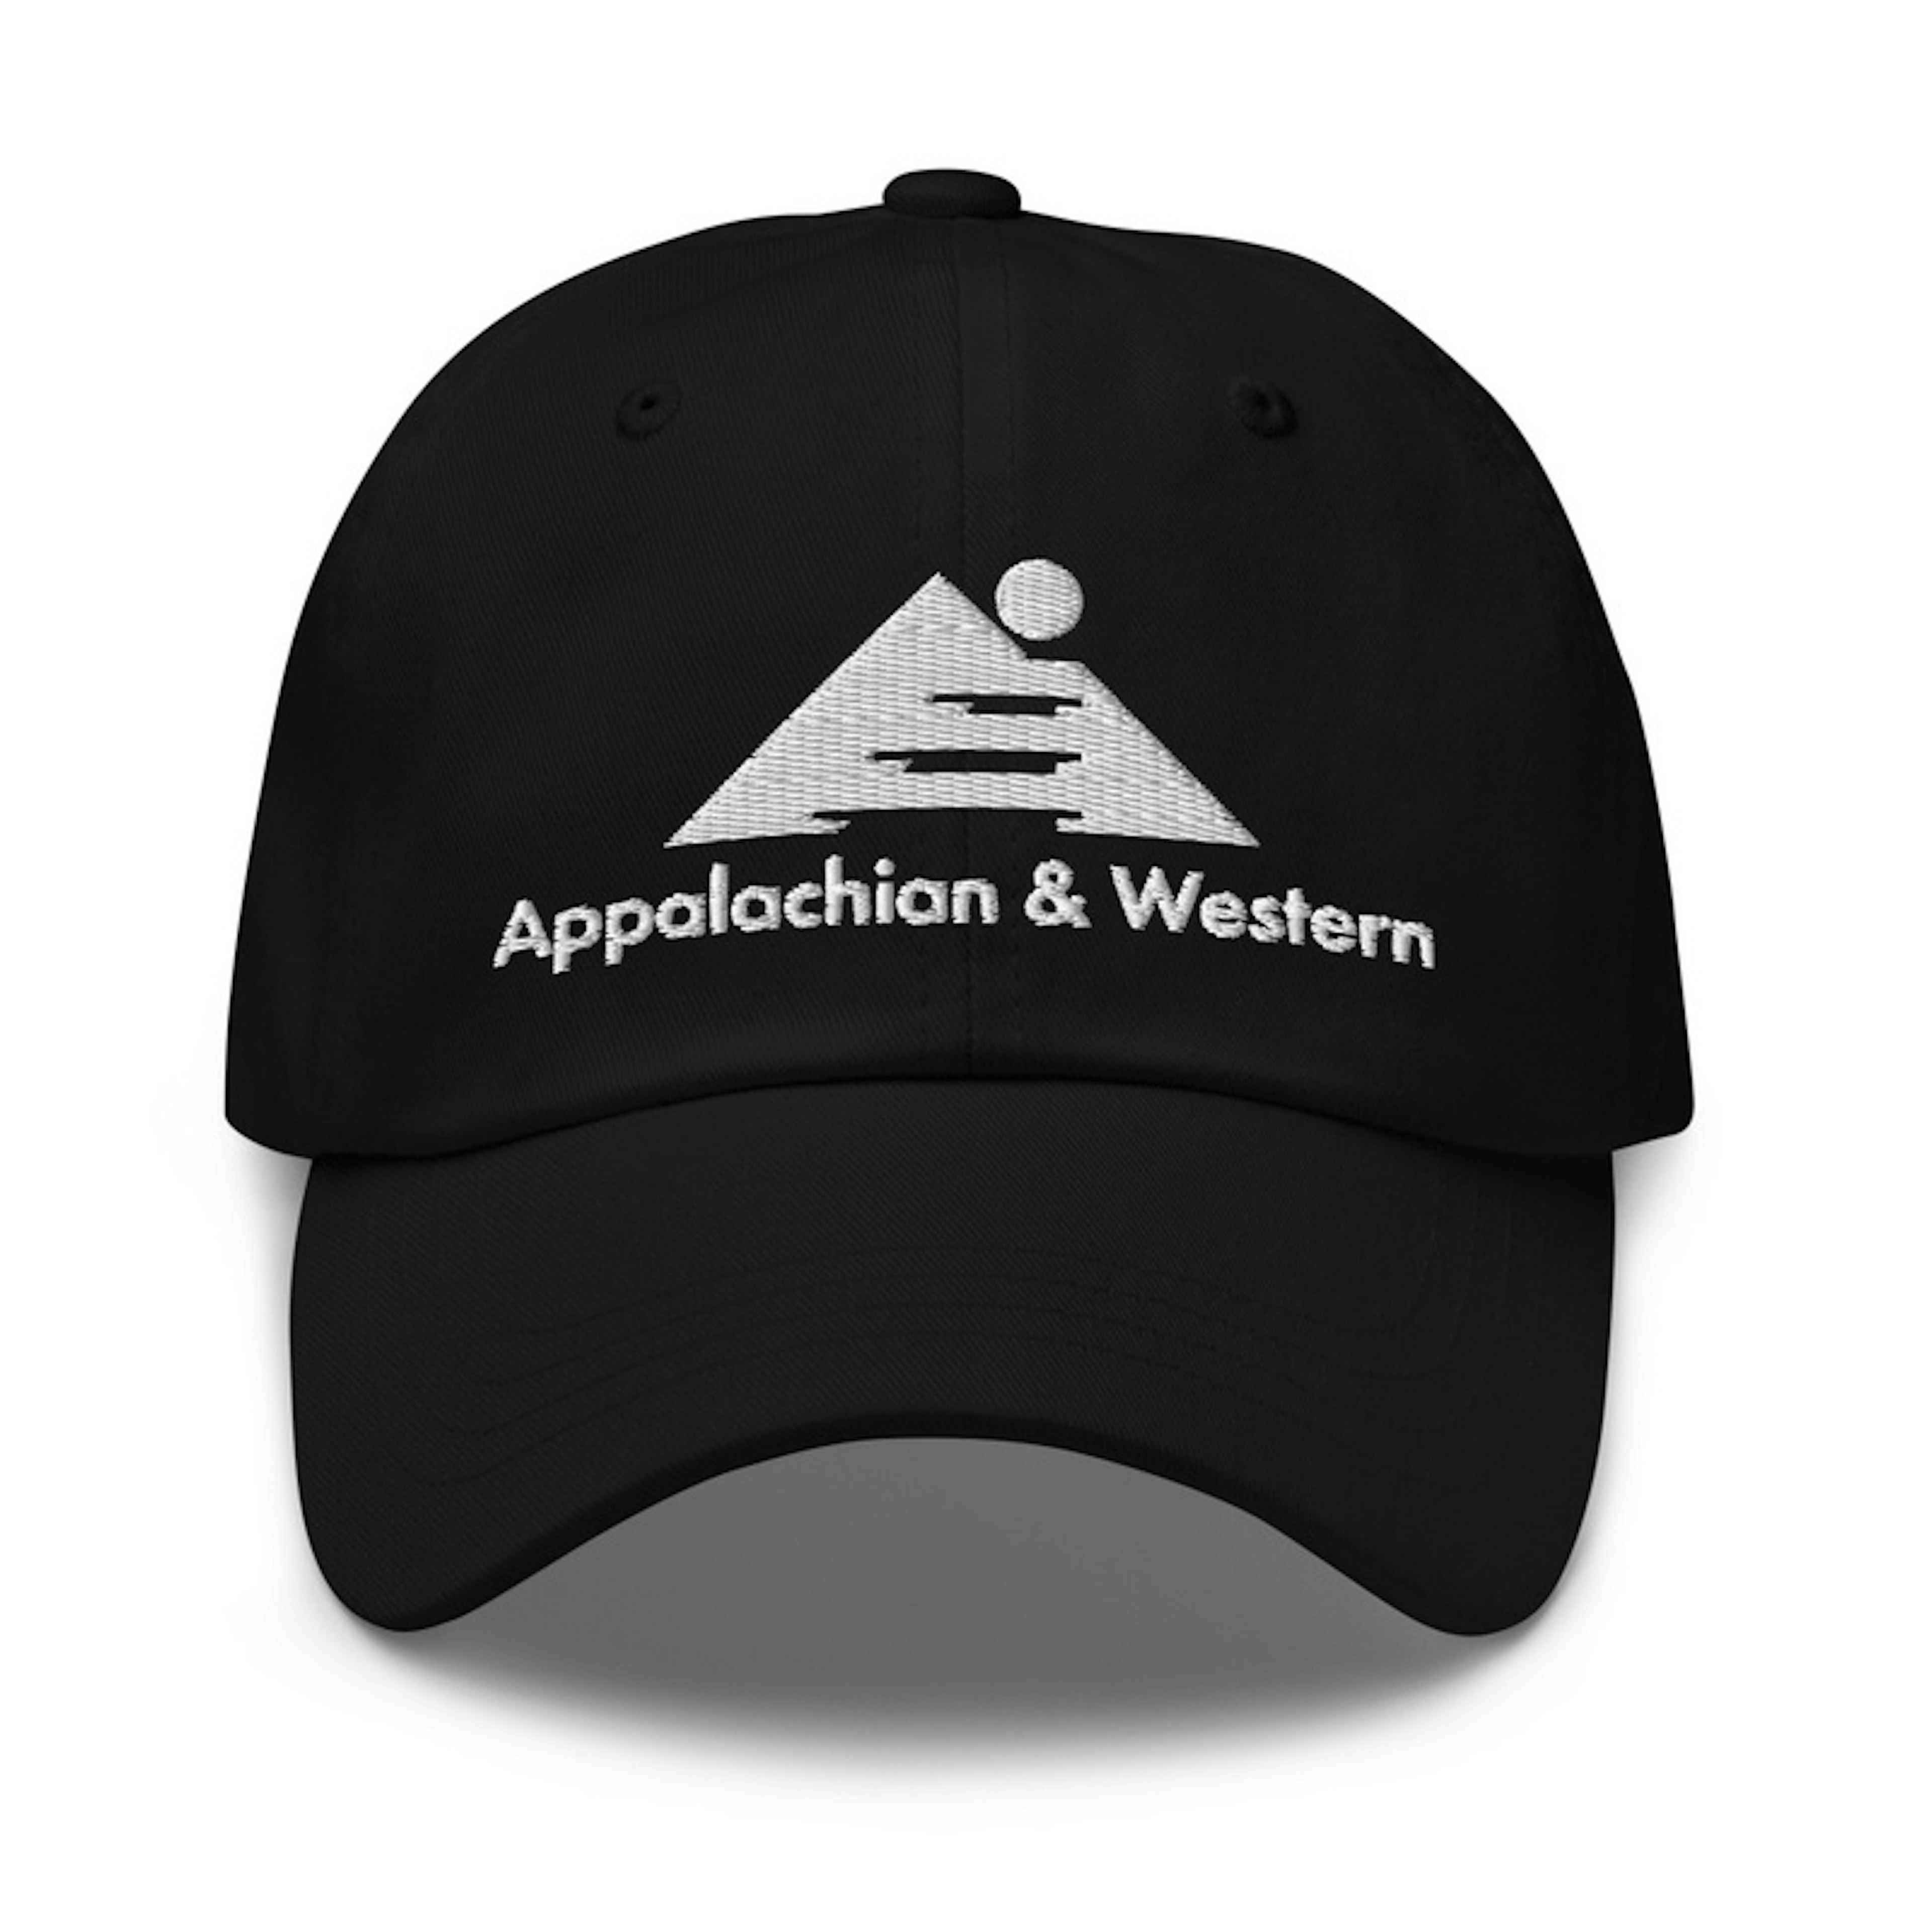 Appalachian & Western Baseball Cap